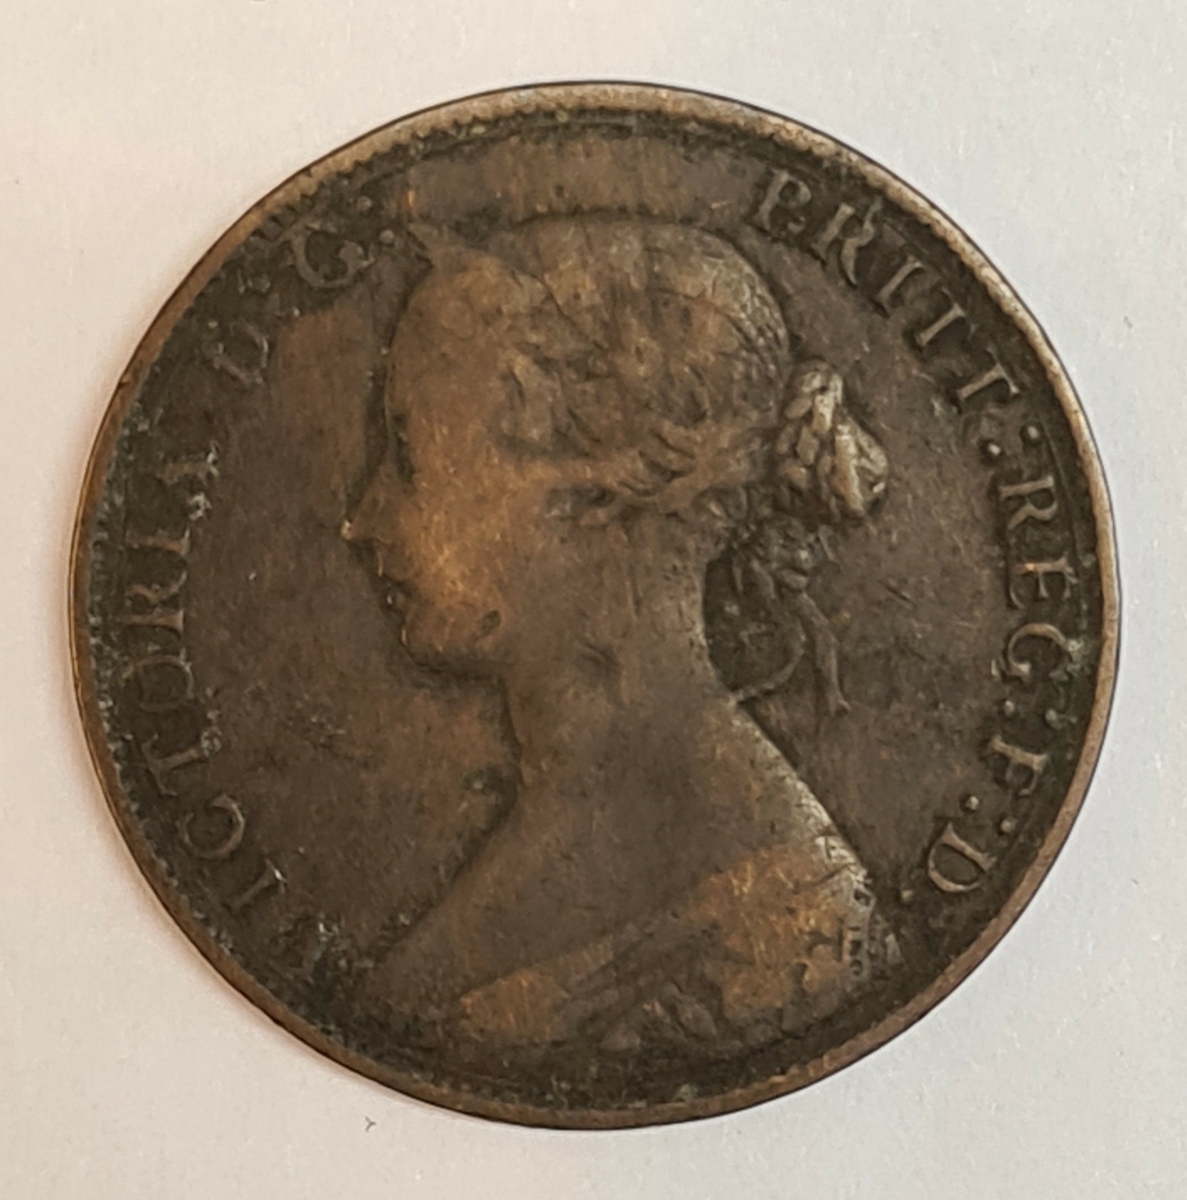 Åtta mynt från Storbritanien.
½ Penny, 1868
½ Penny, 1861
½ Penny, 1862
½ Penny, 1861
½ Penny, 1861
½ Penny, 1861
½ Penny, 1861
½ Penny, 1861